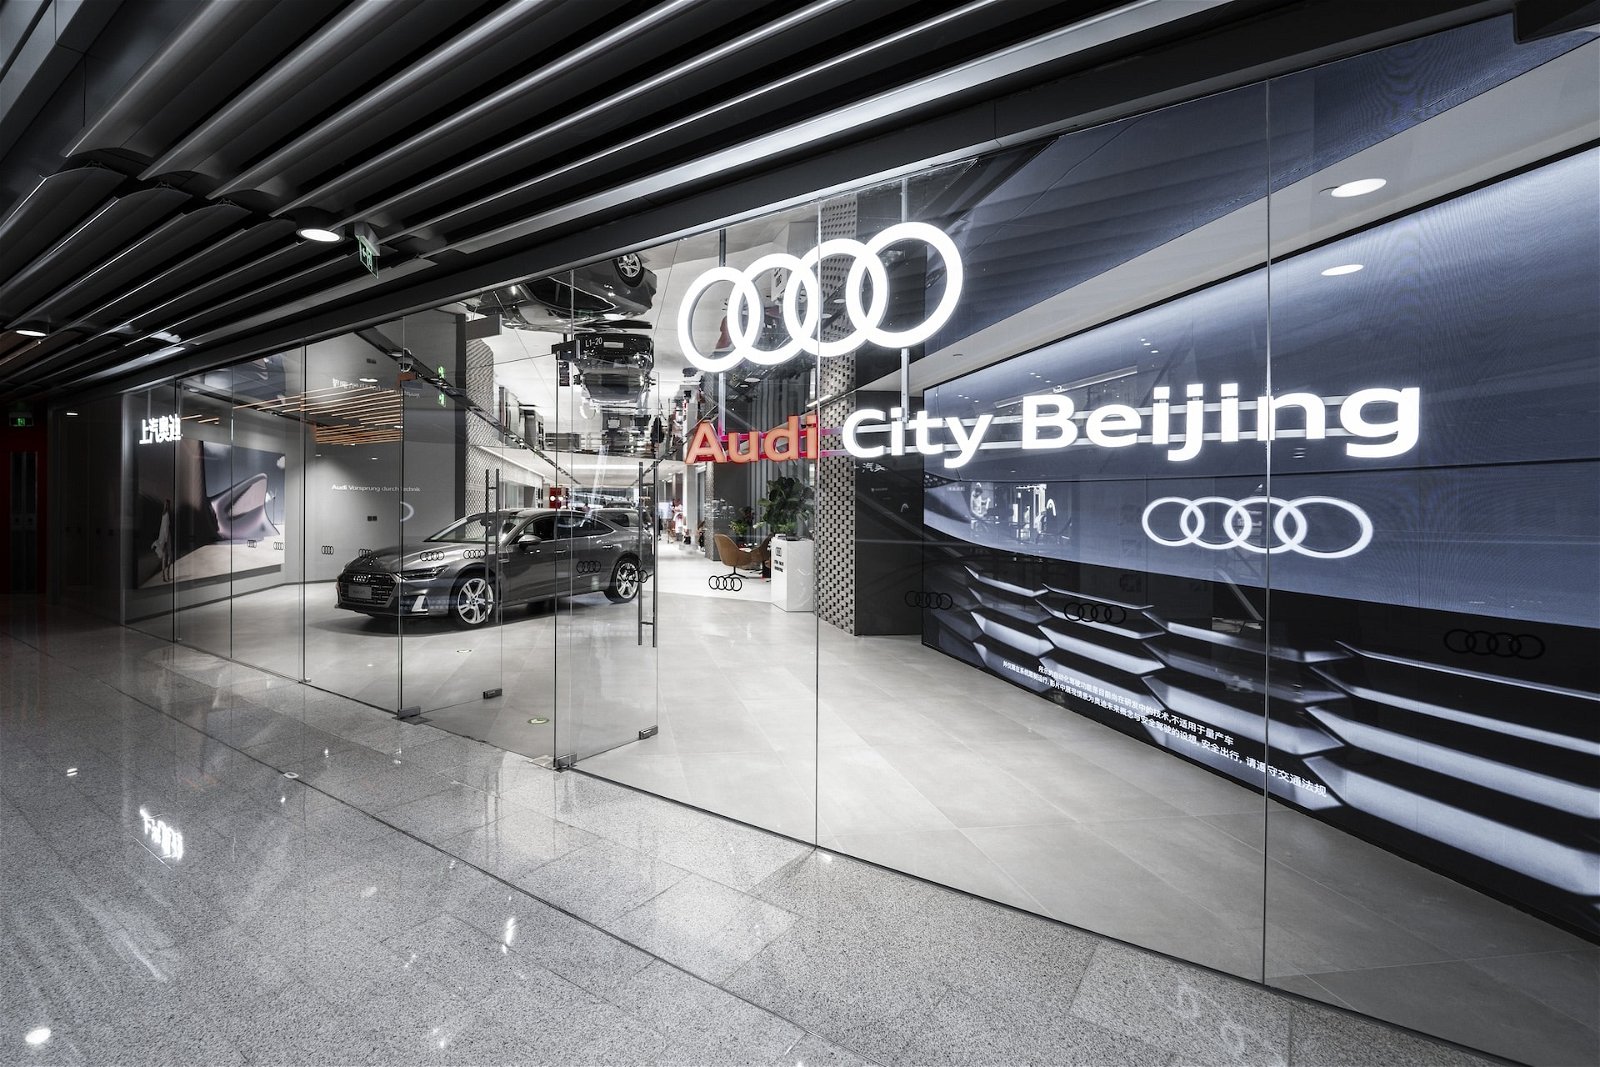 "Haben einen klaren Plan": Audis Entwicklungschef erklärt Elektrostrategie